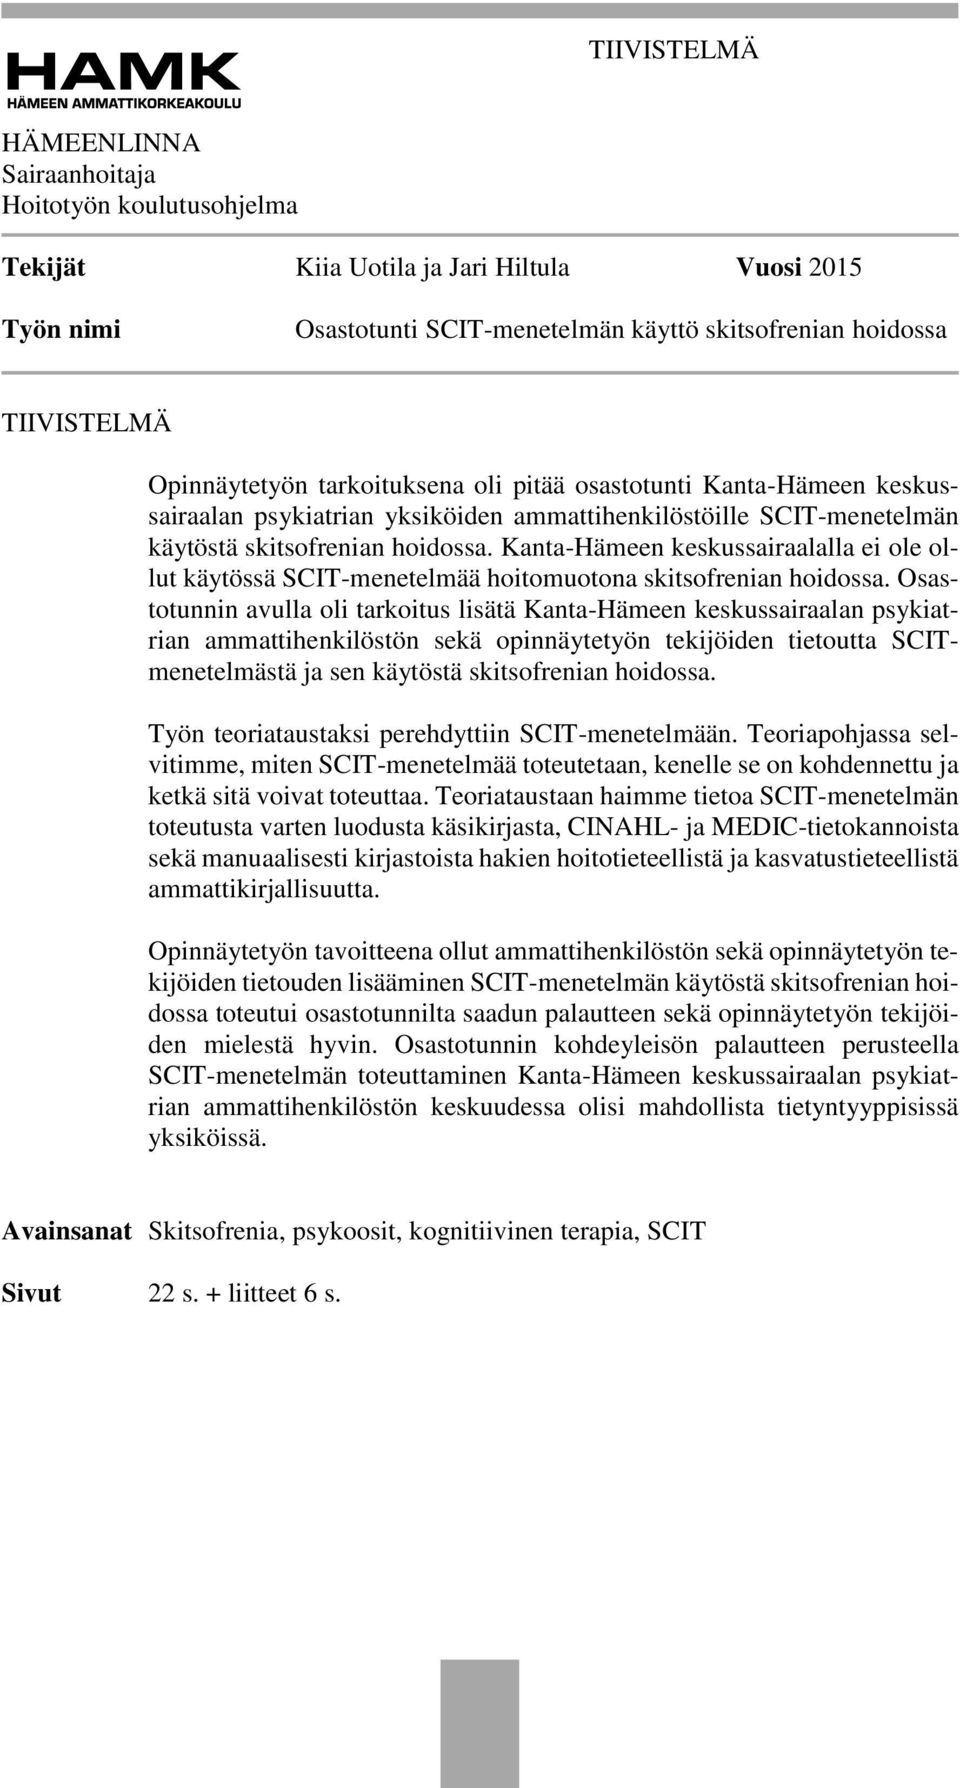 Kanta-Hämeen keskussairaalalla ei ole ollut käytössä SCIT-menetelmää hoitomuotona skitsofrenian hoidossa.